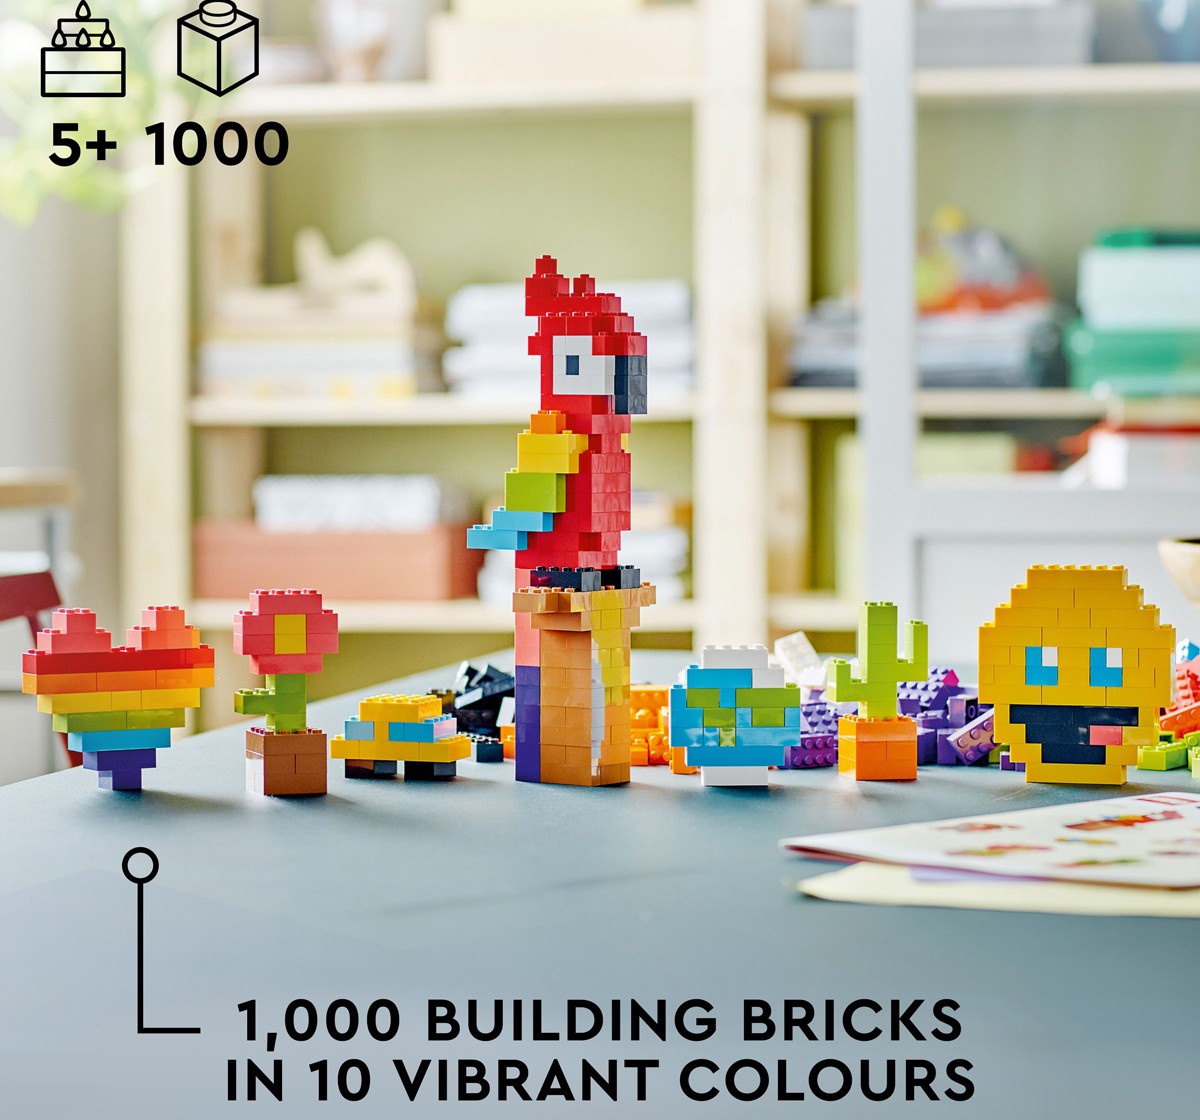 LEGO Classic Lots of Bricks 11030 Building Toy Set 1,000 Pieces Multicolour 5Y+